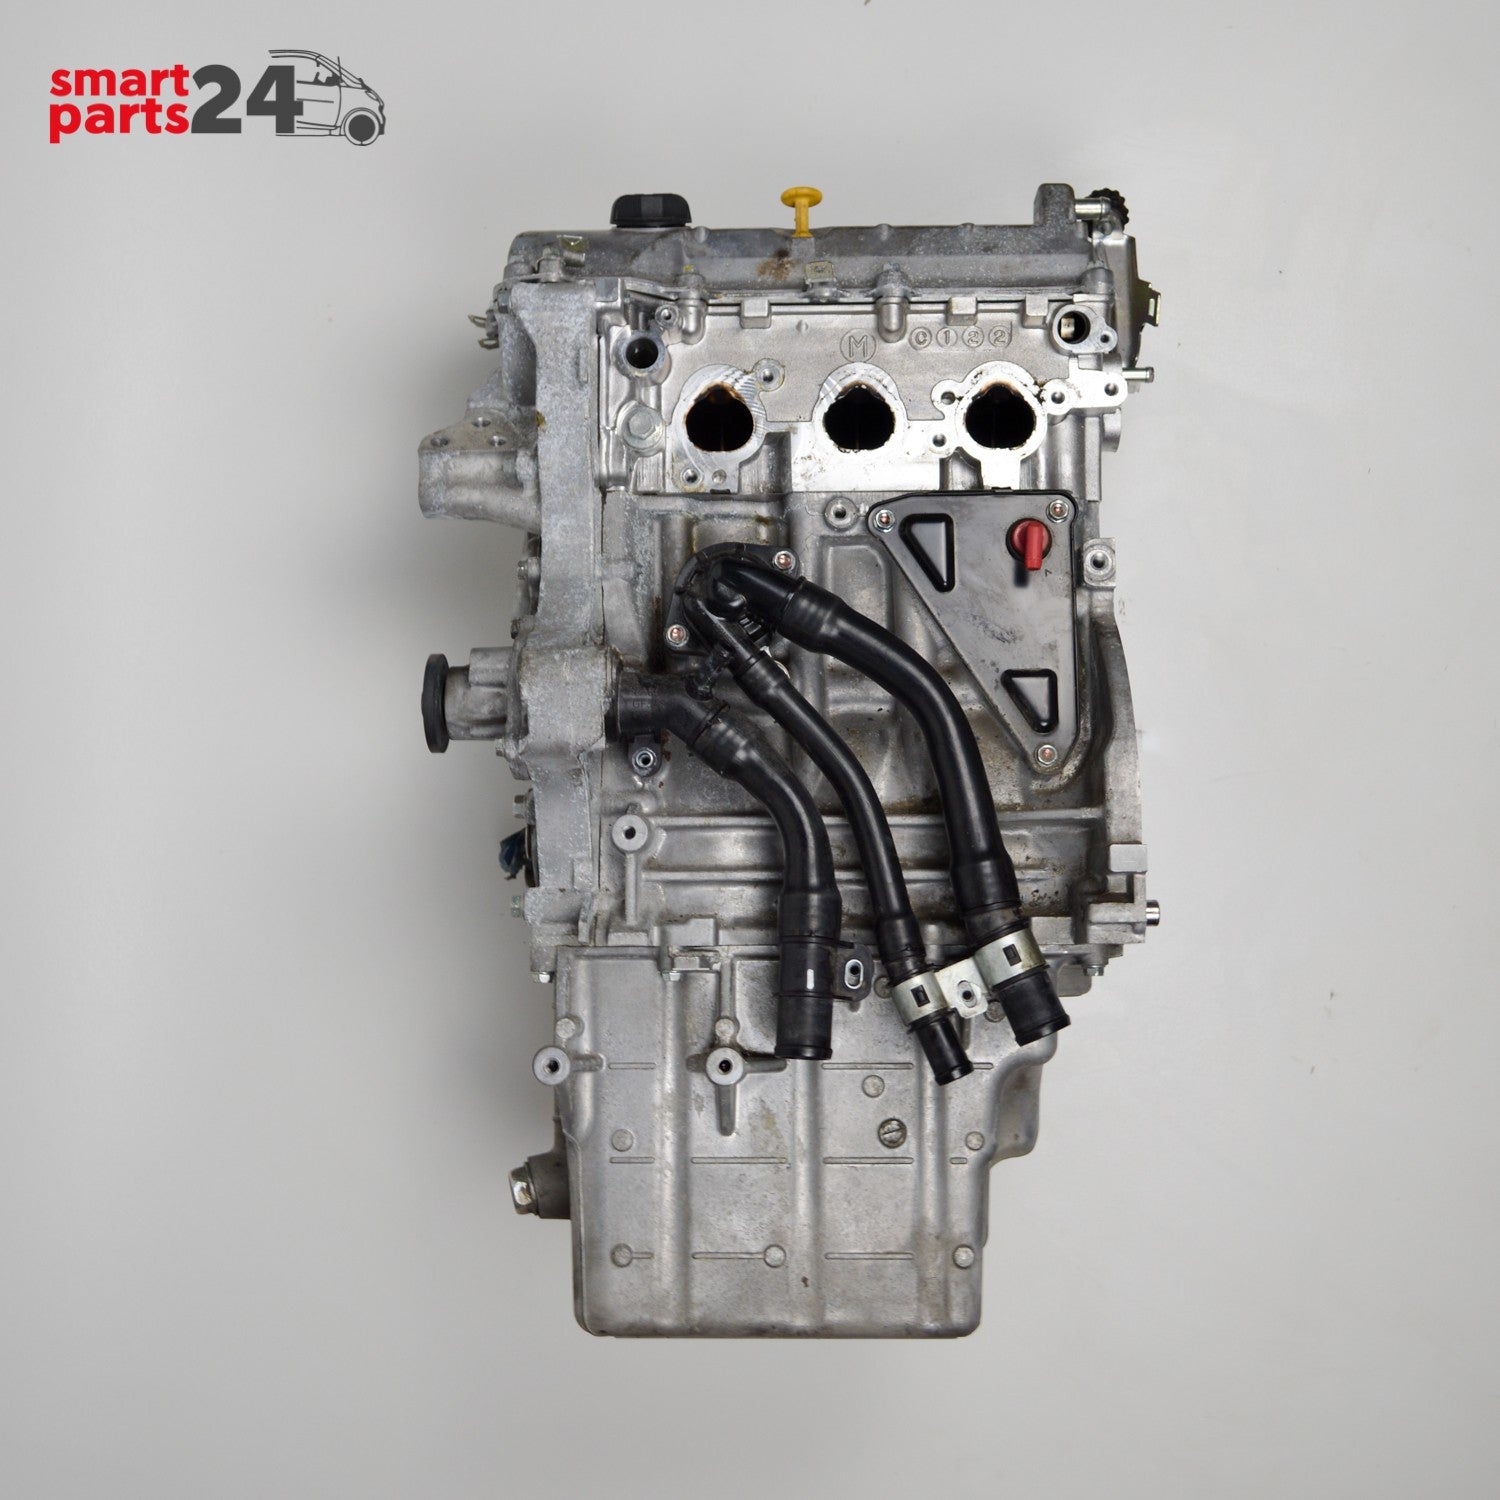 Smart Fortwo 451 moteur essence 999ccm 1.0 2007-2009